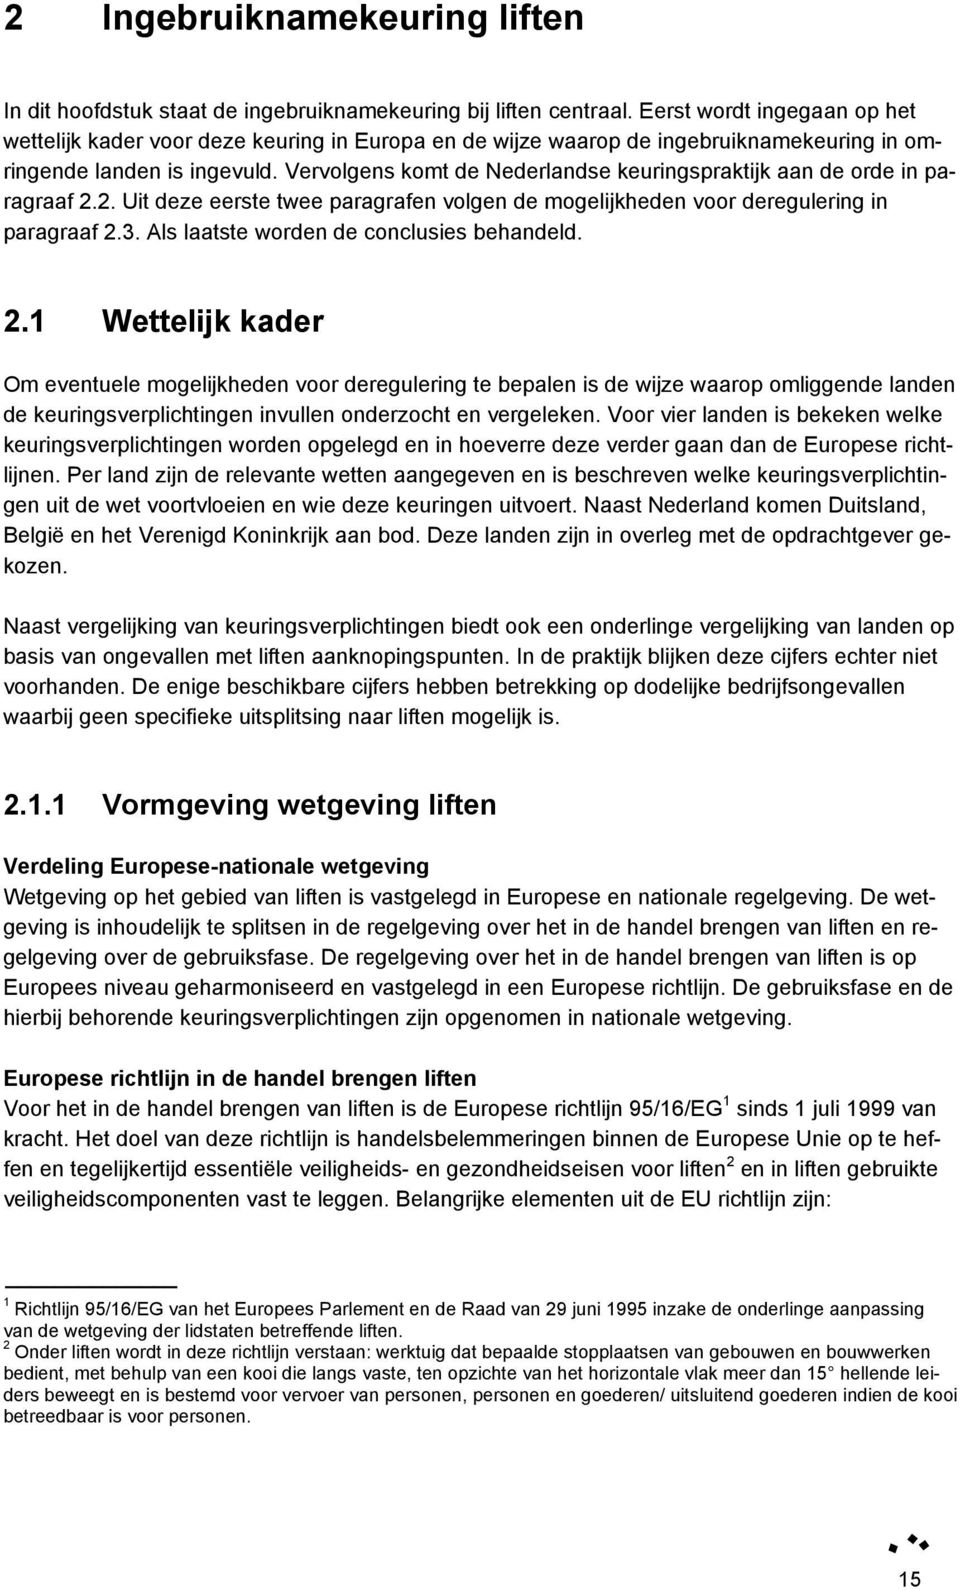 Vervolgens komt de Nederlandse keuringspraktijk aan de orde in paragraaf 2.2. Uit deze eerste twee paragrafen volgen de mogelijkheden voor deregulering in paragraaf 2.3.